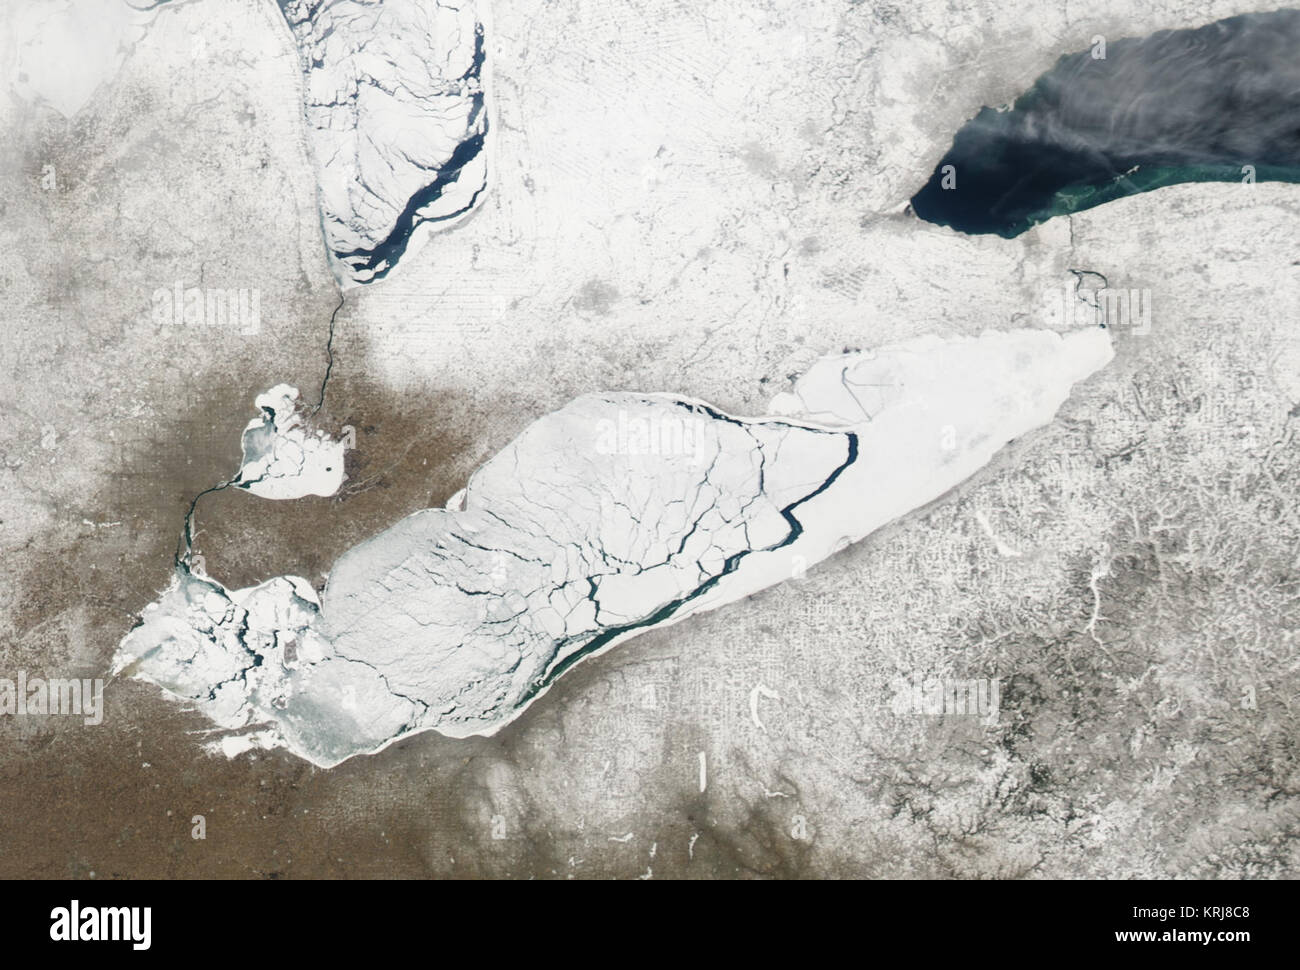 Ai primi di marzo 2007, ice avanzata e si ritirarono sopra la superficie del lago Erie, lungo il Regno States-Canada confine. La risoluzione moderata Imaging Spectroradiometer modis.gsfc.nasa.gov (dello spettroradiometro MODIS) su NASA aqua.nasa.gov/ Aqua satellite catturato cloud gratuitamente le immagini del lago cambia il 9 Marzo (top) e 13 marzo (fondo). Nell'immagine presa il 9 marzo, ghiaccio quasi copre completamente il lago, ma picchi di acqua attraverso le grandi crepe stretching attraverso il corpo di acqua. Nell'immagine presa il 13 Marzo solo sottile semitrasparente, strati di ghiaccio rimangono -- nella metà orientale e vicino alla punta occidentale. Meno d Foto Stock